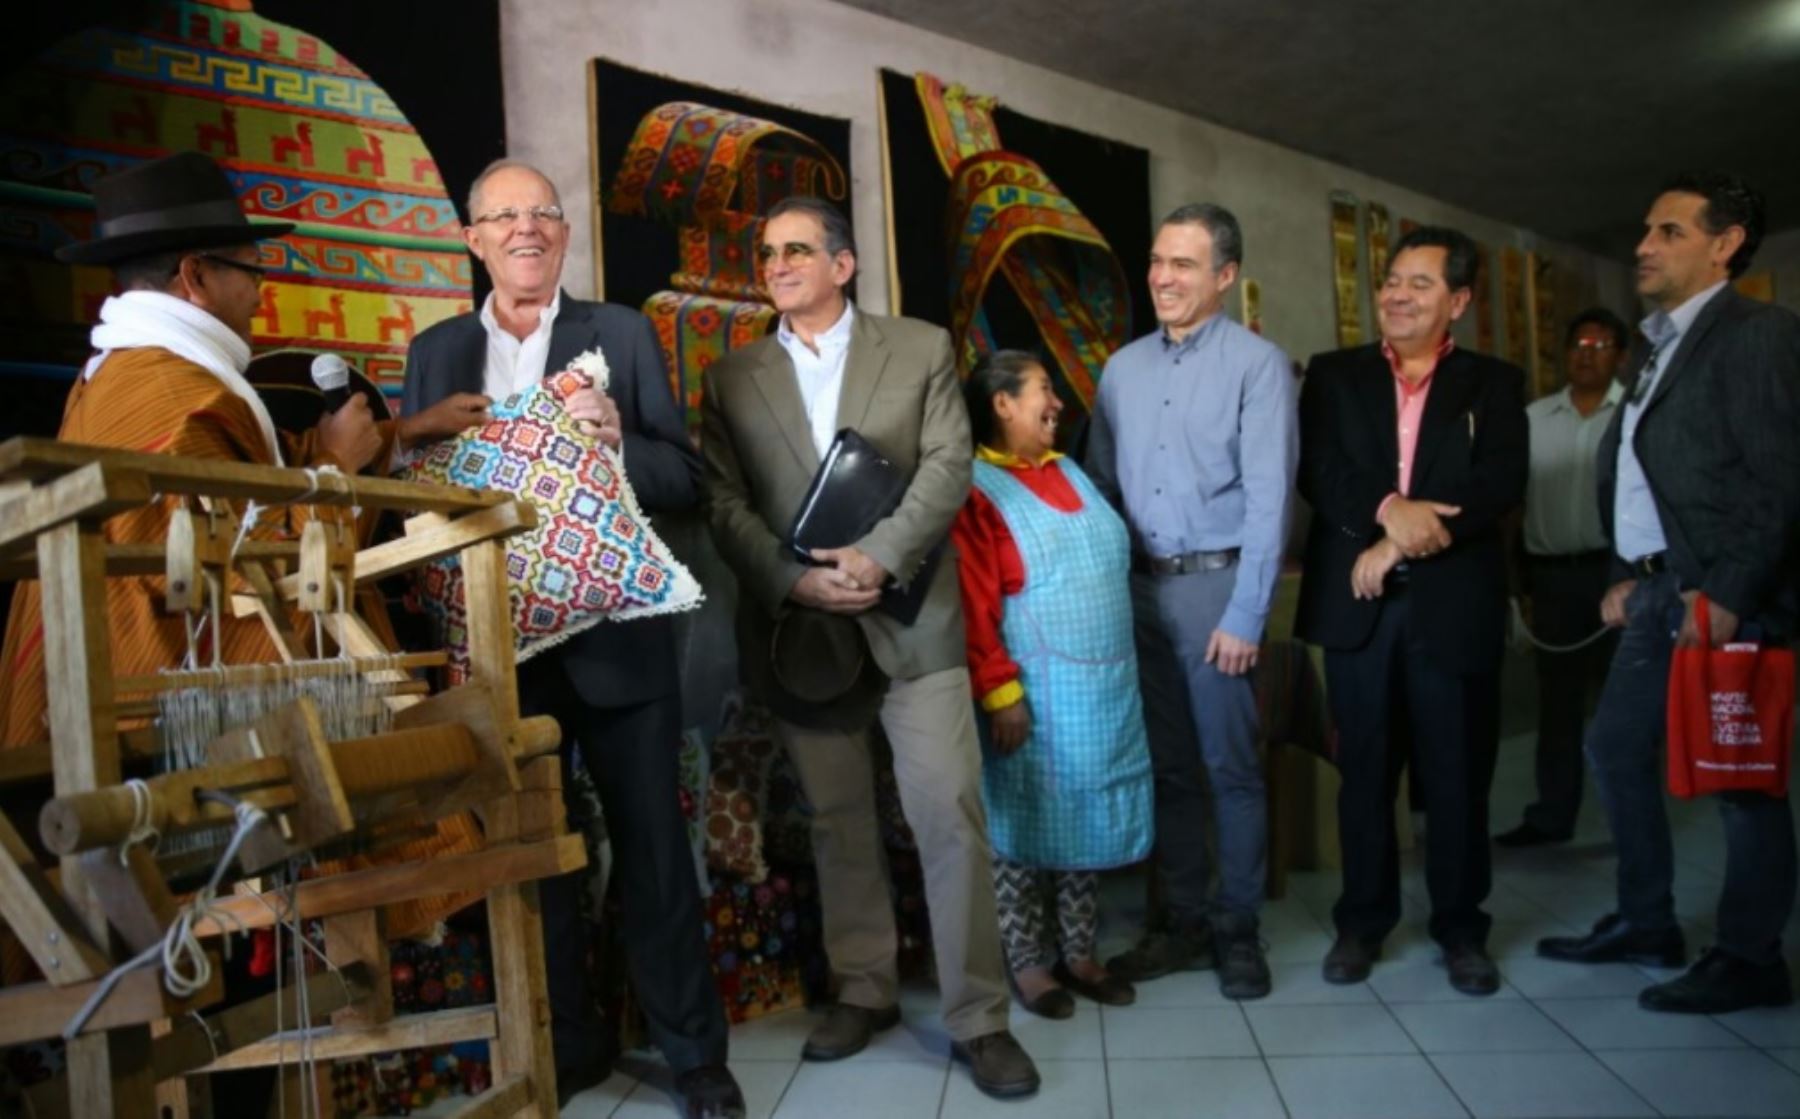 La región Ayacucho será la sede del Centro Nacional del Arte Popular en el Perú, en homenaje a los creadores del arte popular en esa región, anunció hoy el ministro de Cultura, Salvador del Solar.